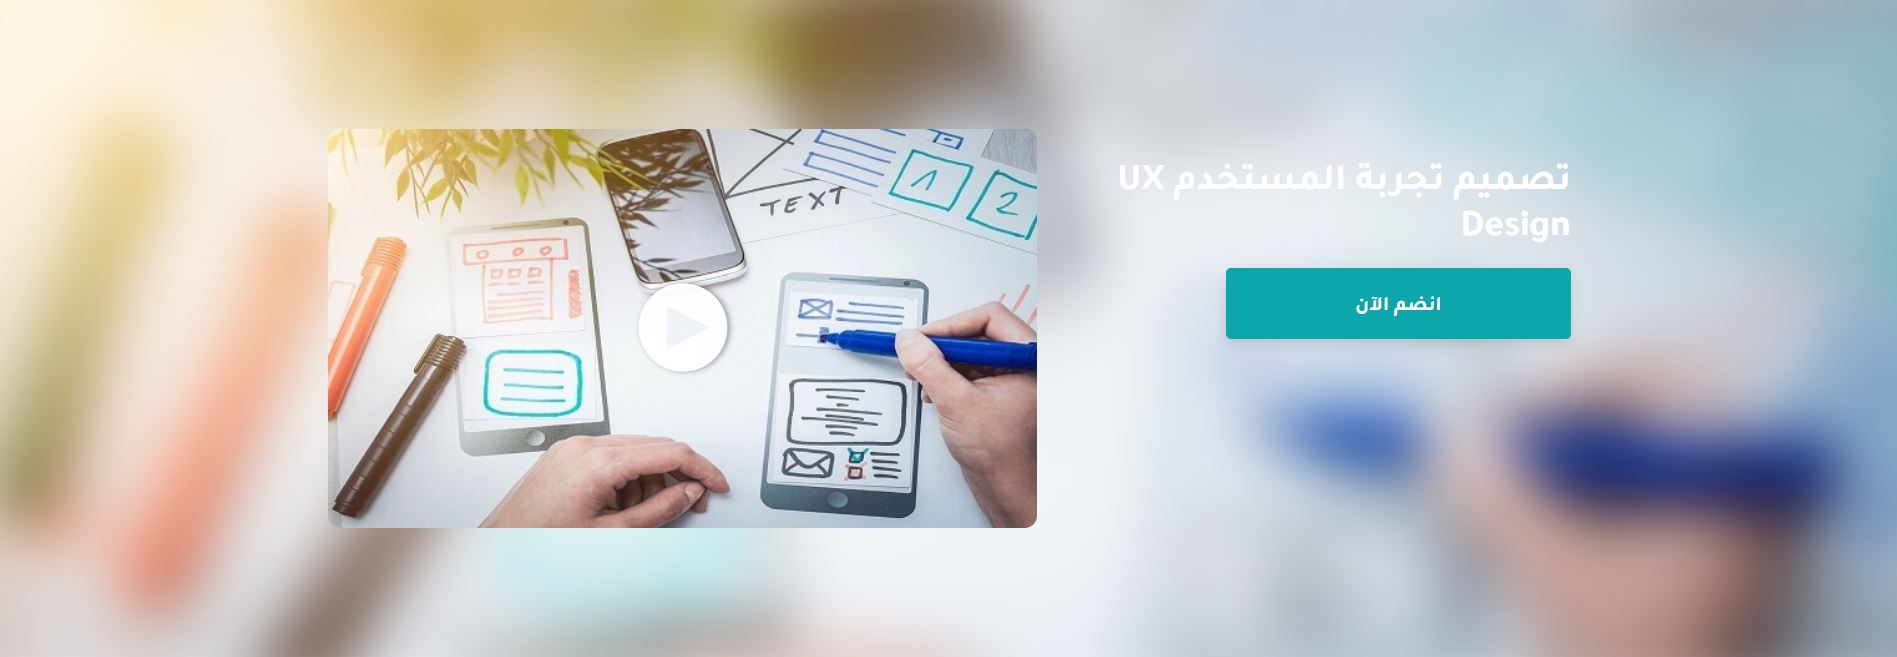 كورس تصميم تجربة المستخدم UX Design مقدم من منصة إدرك (شهادة مجانية)